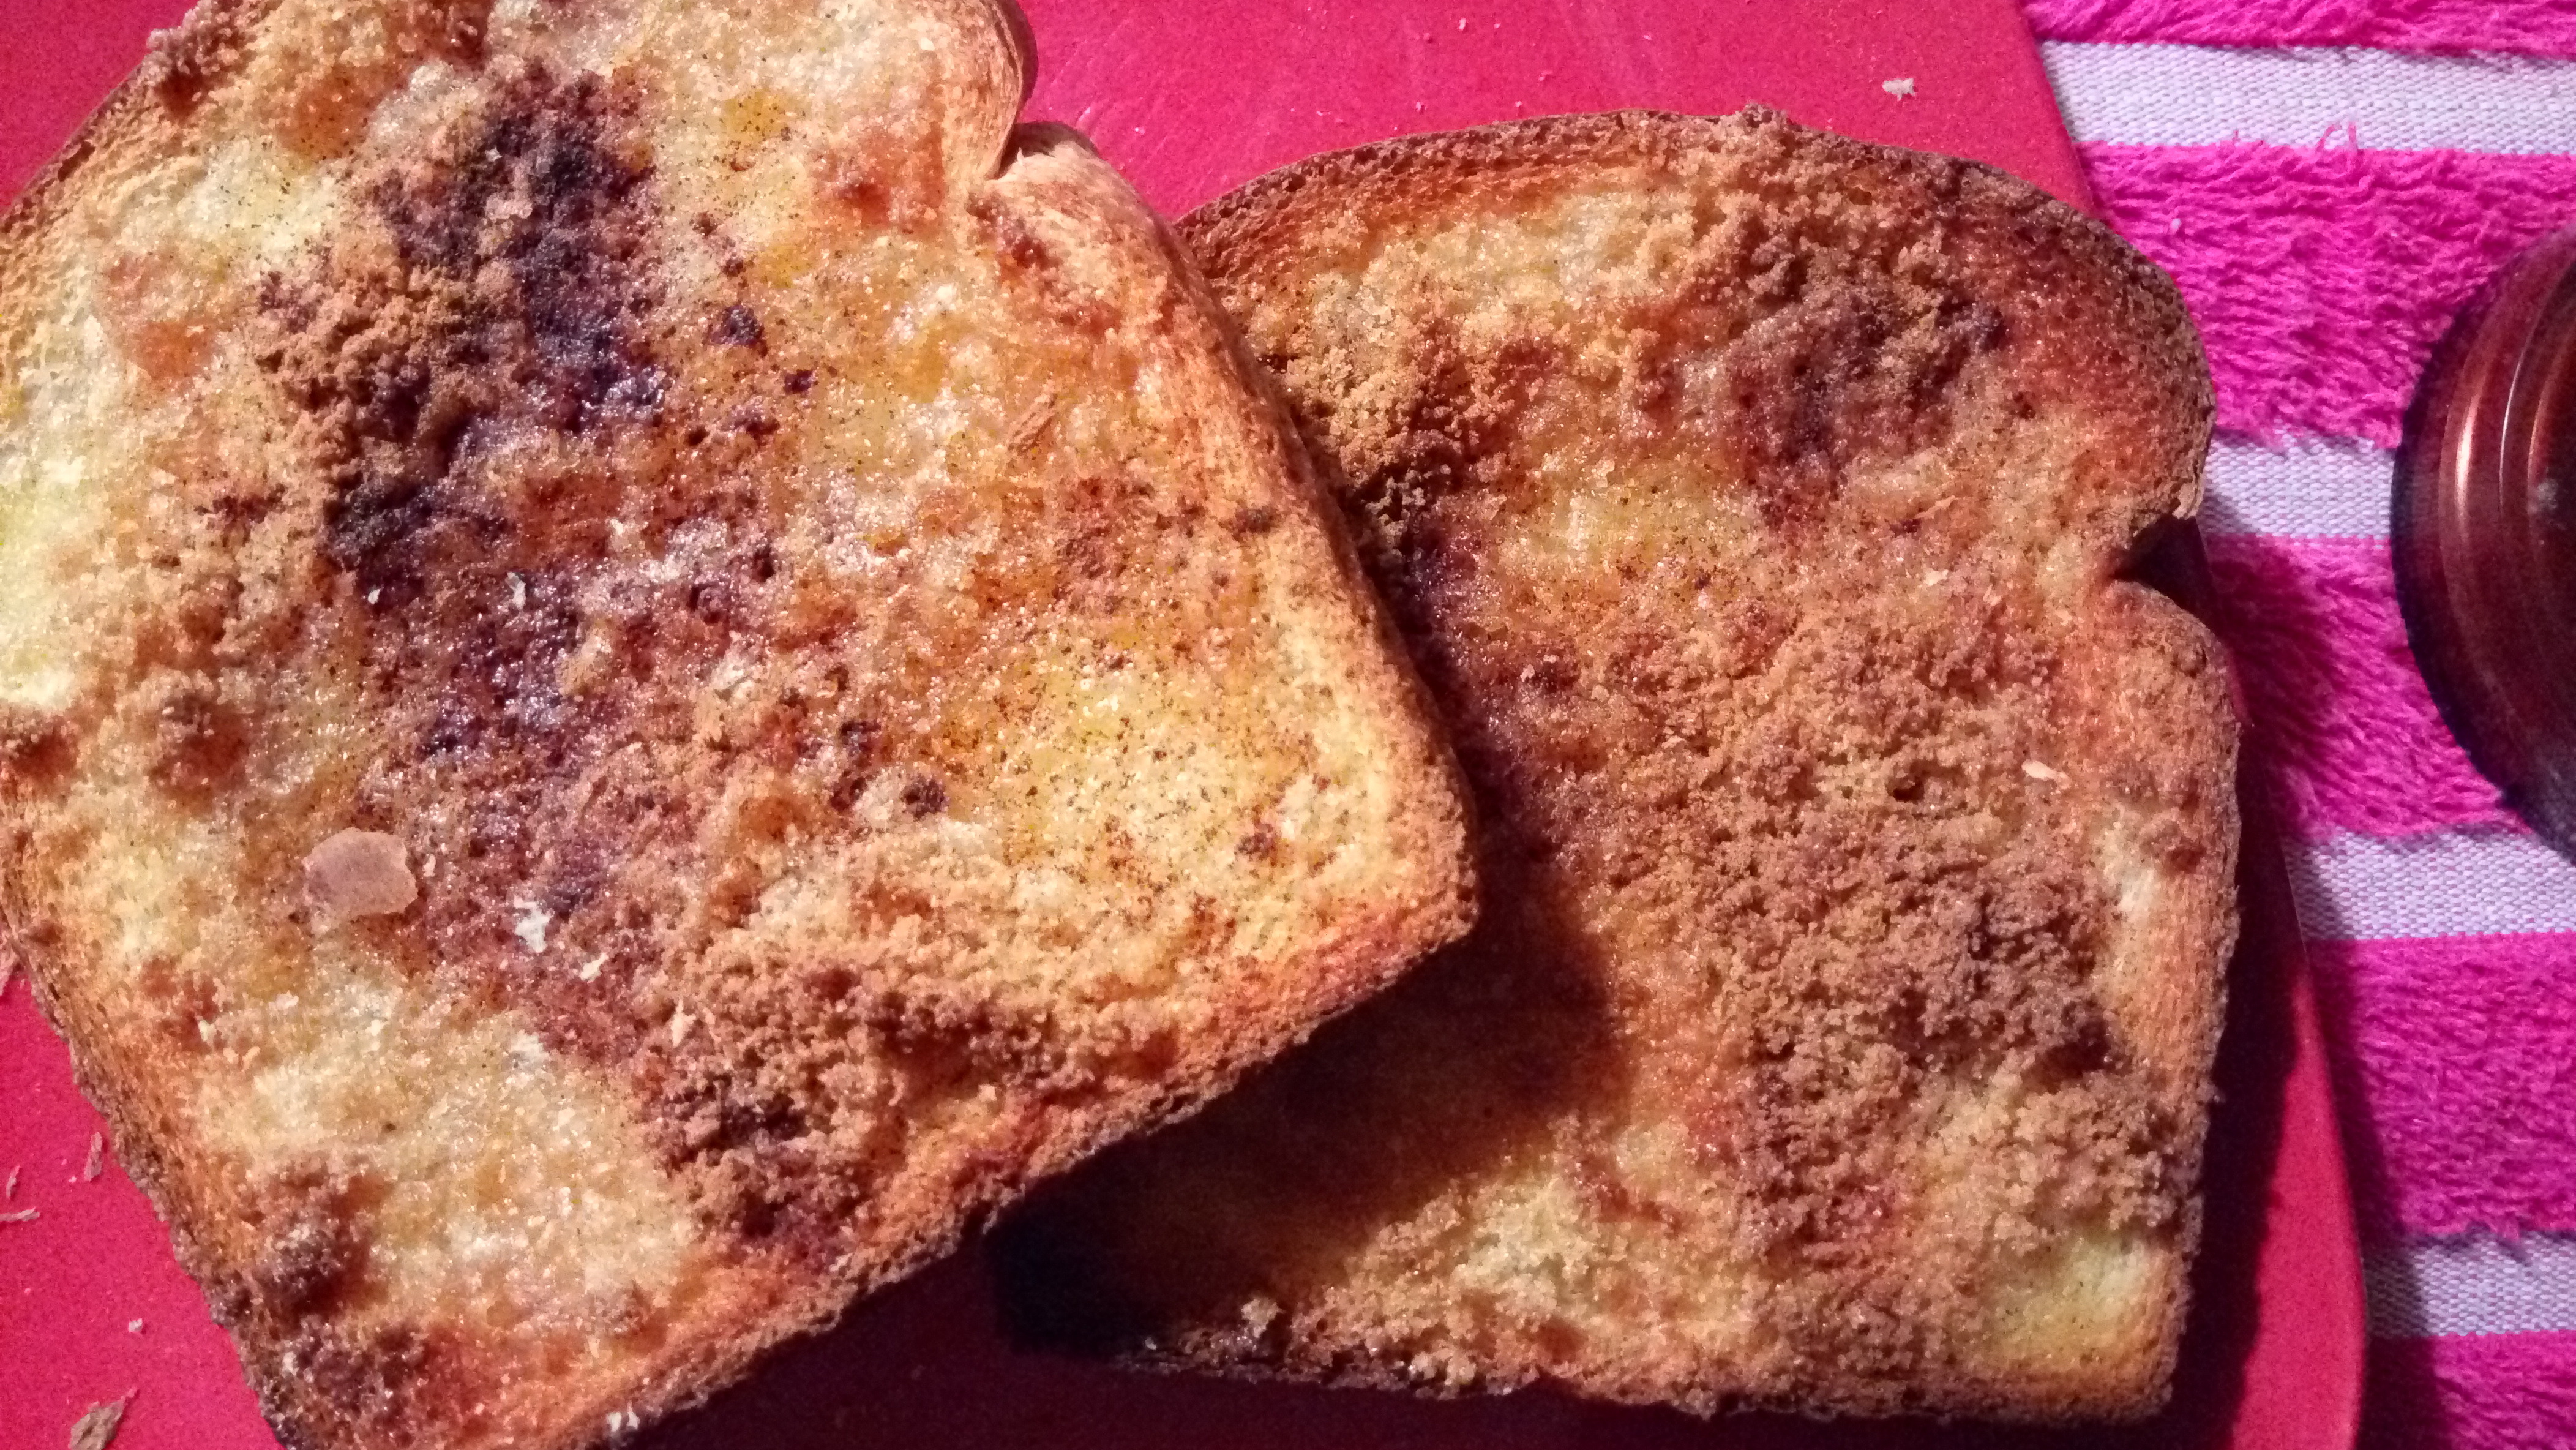 Cinnamon Toast